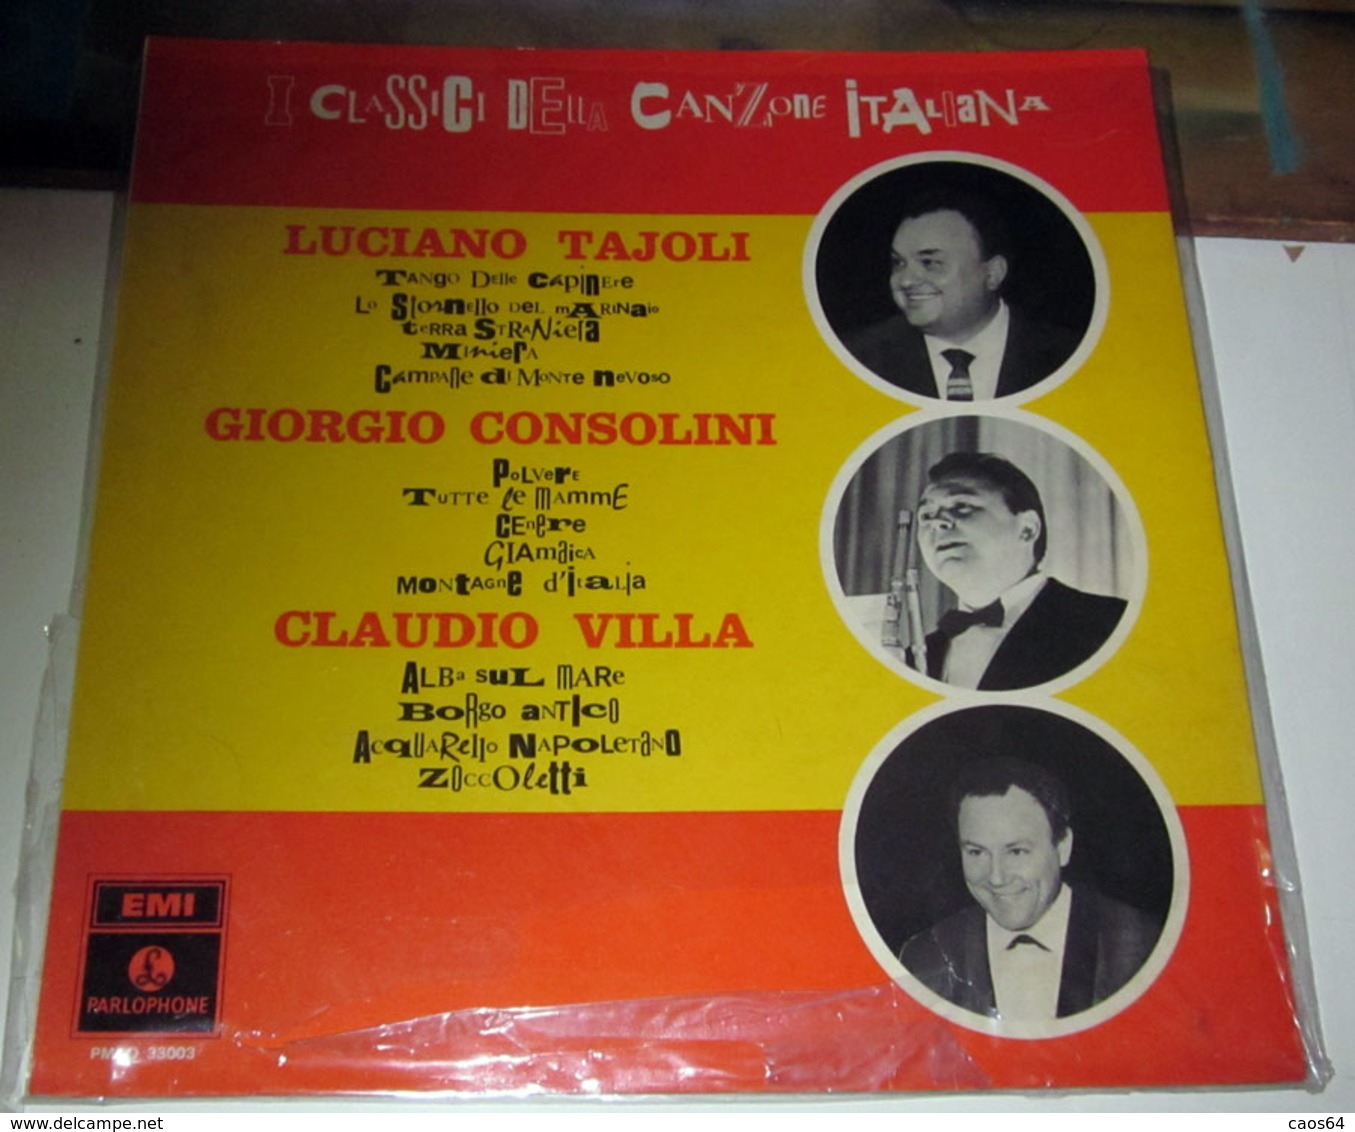 LUCIANO TAJOLI GIORGIO CONSOLINI CLAUDIO VILLA I CLASSICI DELLA CANZONE ITALIANA - Altri - Musica Italiana